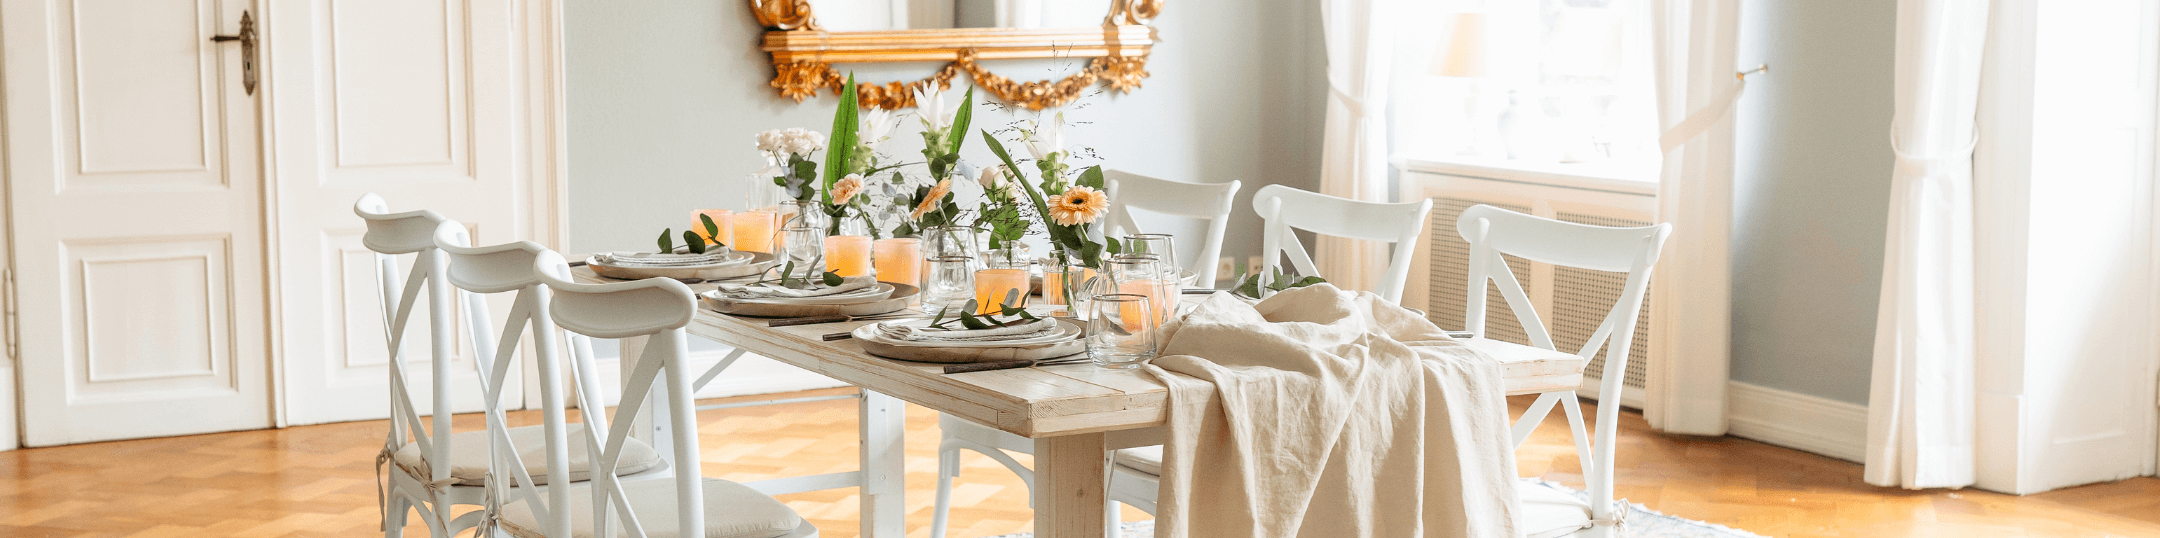 Ein mit Blumen geschmückter Tisch